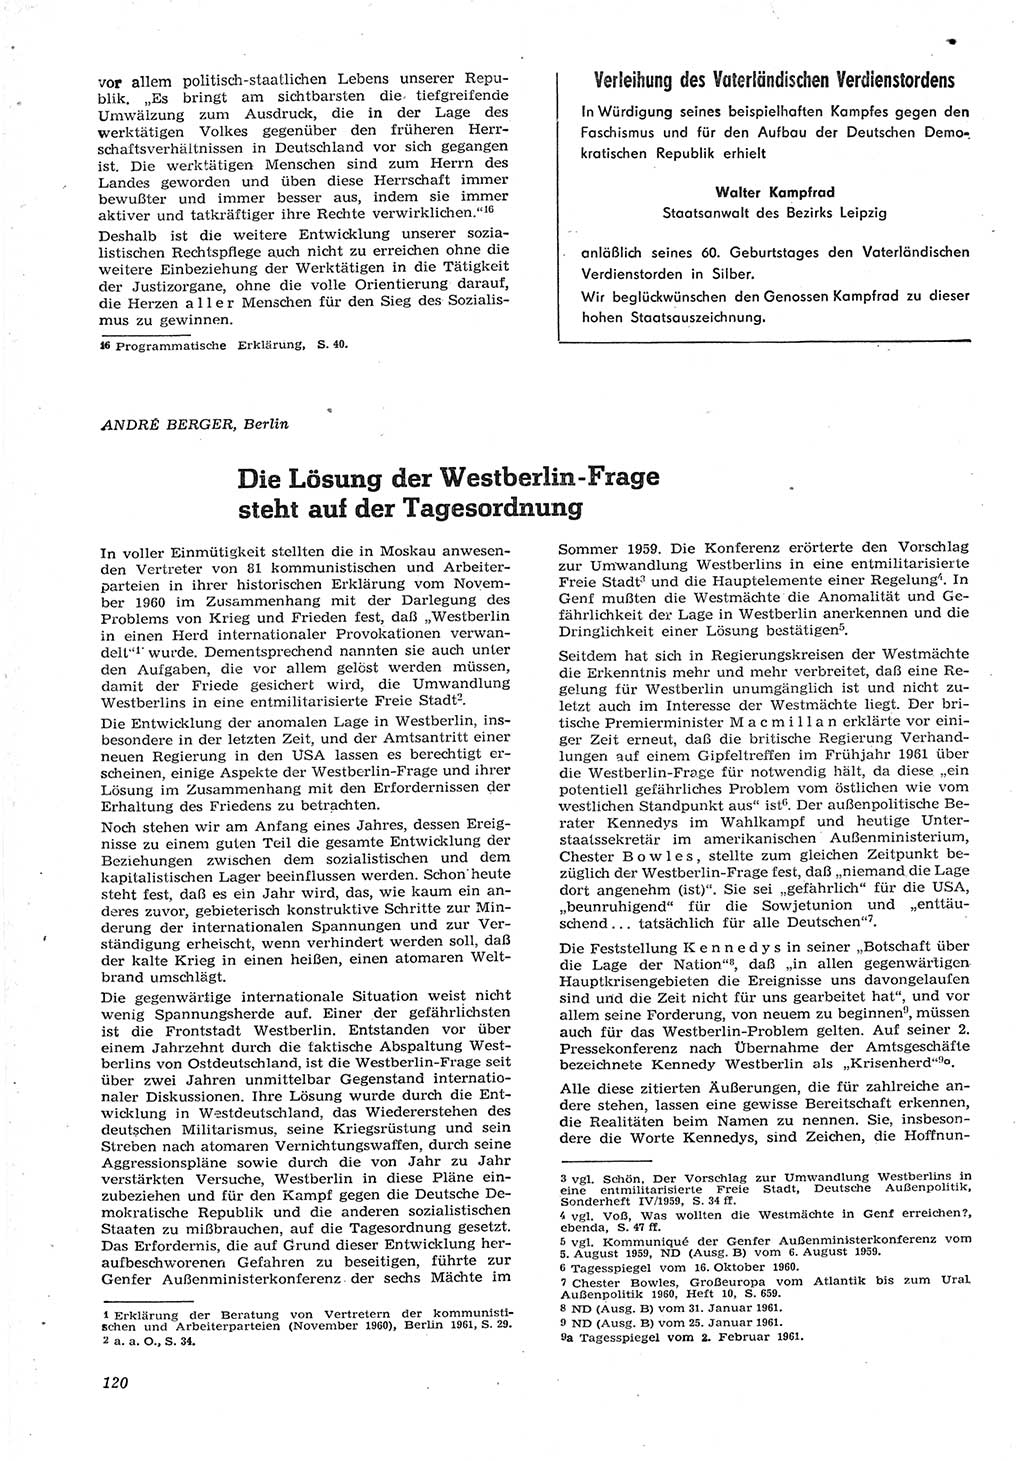 Neue Justiz (NJ), Zeitschrift für Recht und Rechtswissenschaft [Deutsche Demokratische Republik (DDR)], 15. Jahrgang 1961, Seite 120 (NJ DDR 1961, S. 120)